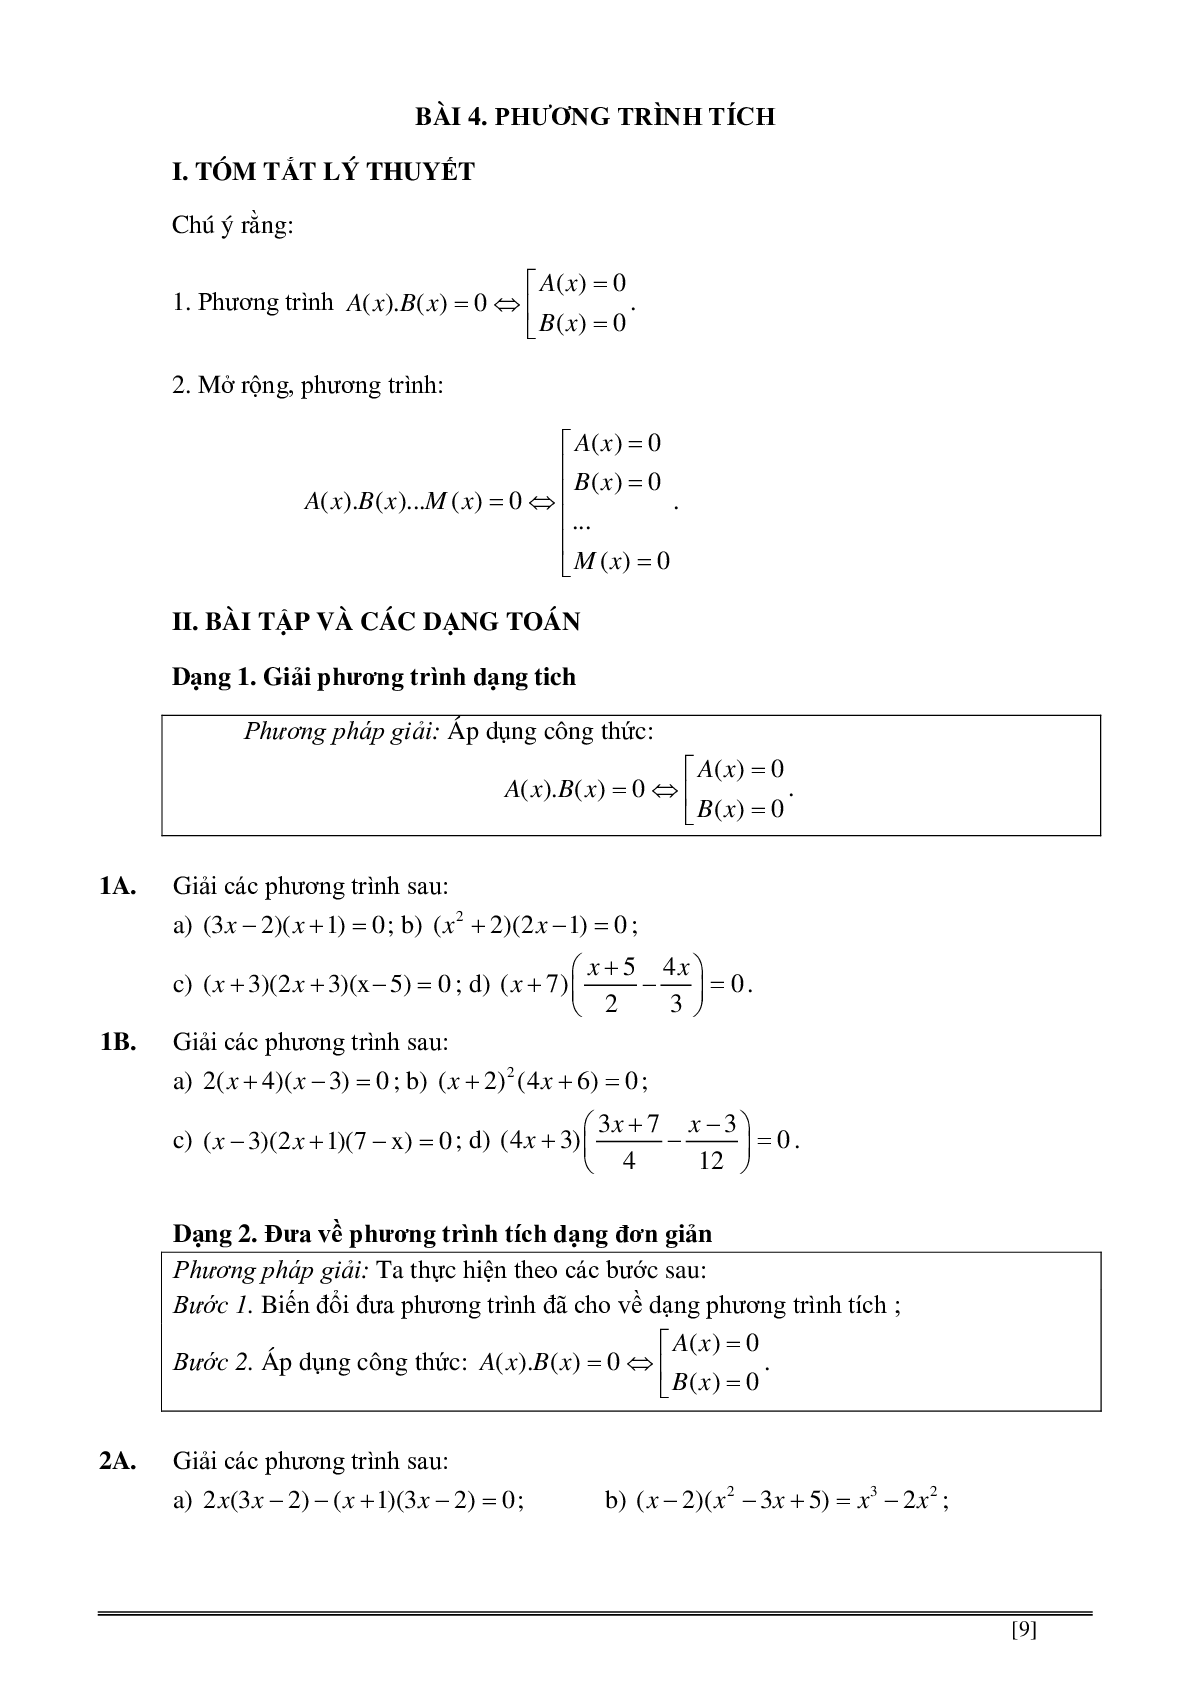 Củng cố và ôn luyện toán 8 kì 2 trang 139-186 (trang 9)